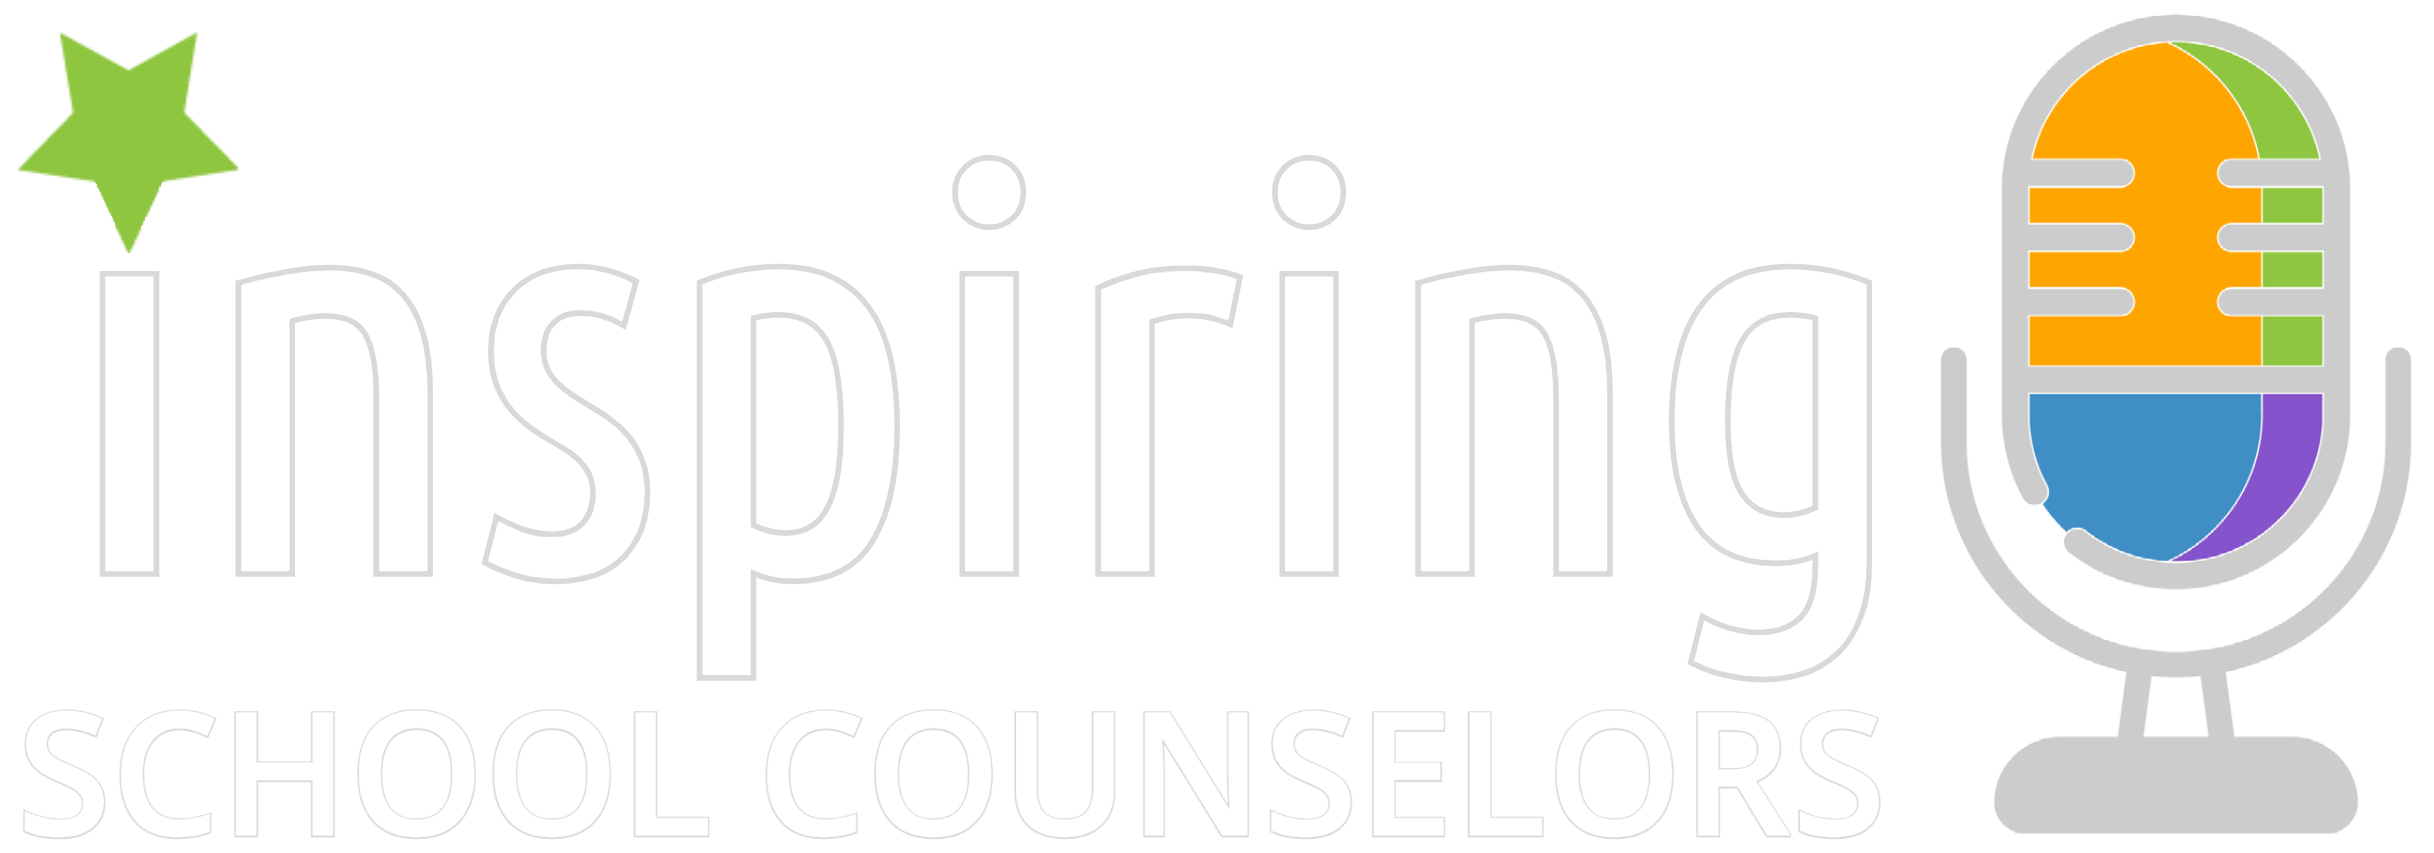 Inspiring School Counselors logo